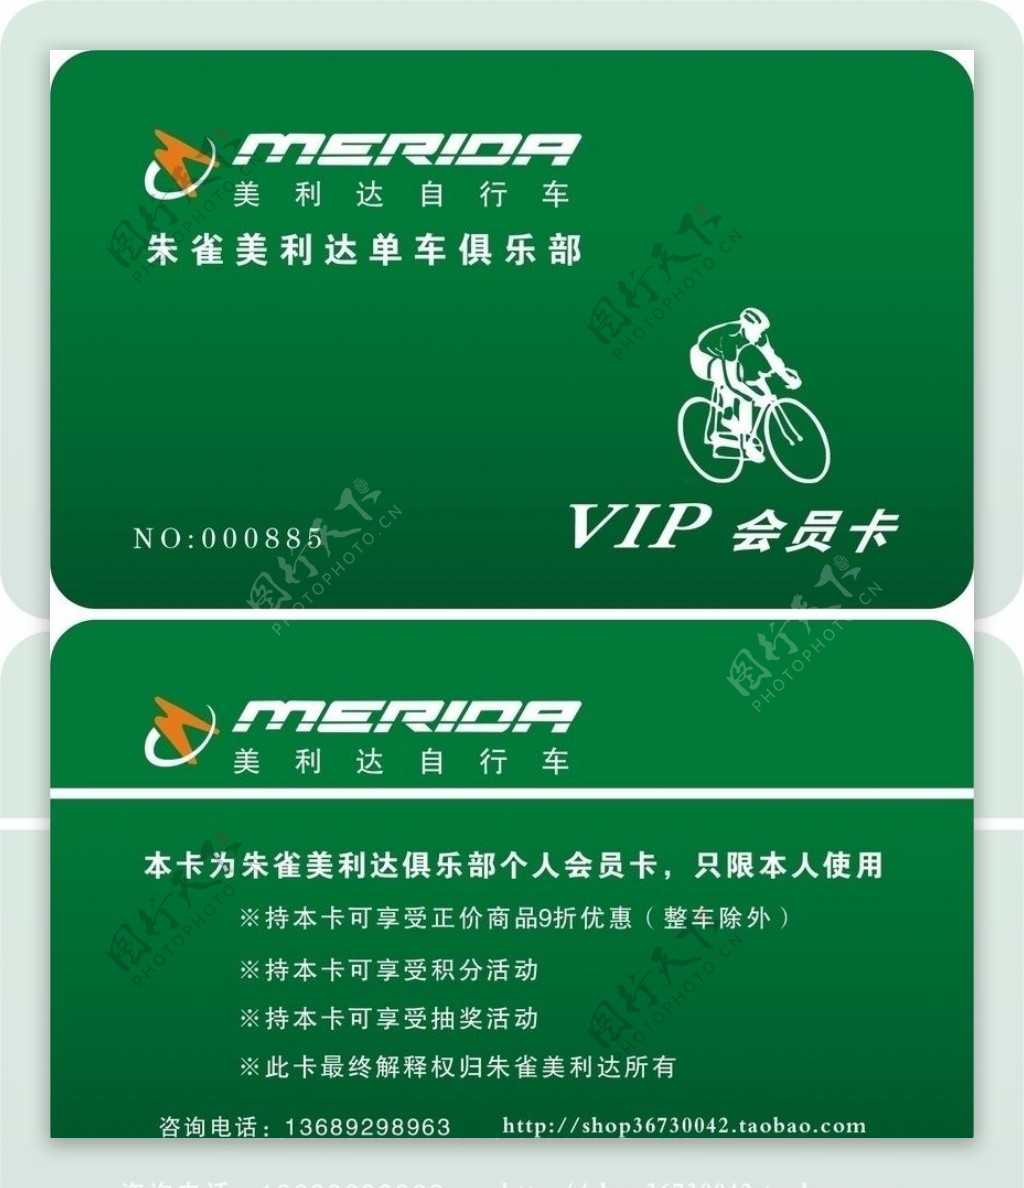 单车俱乐部VIP卡图片